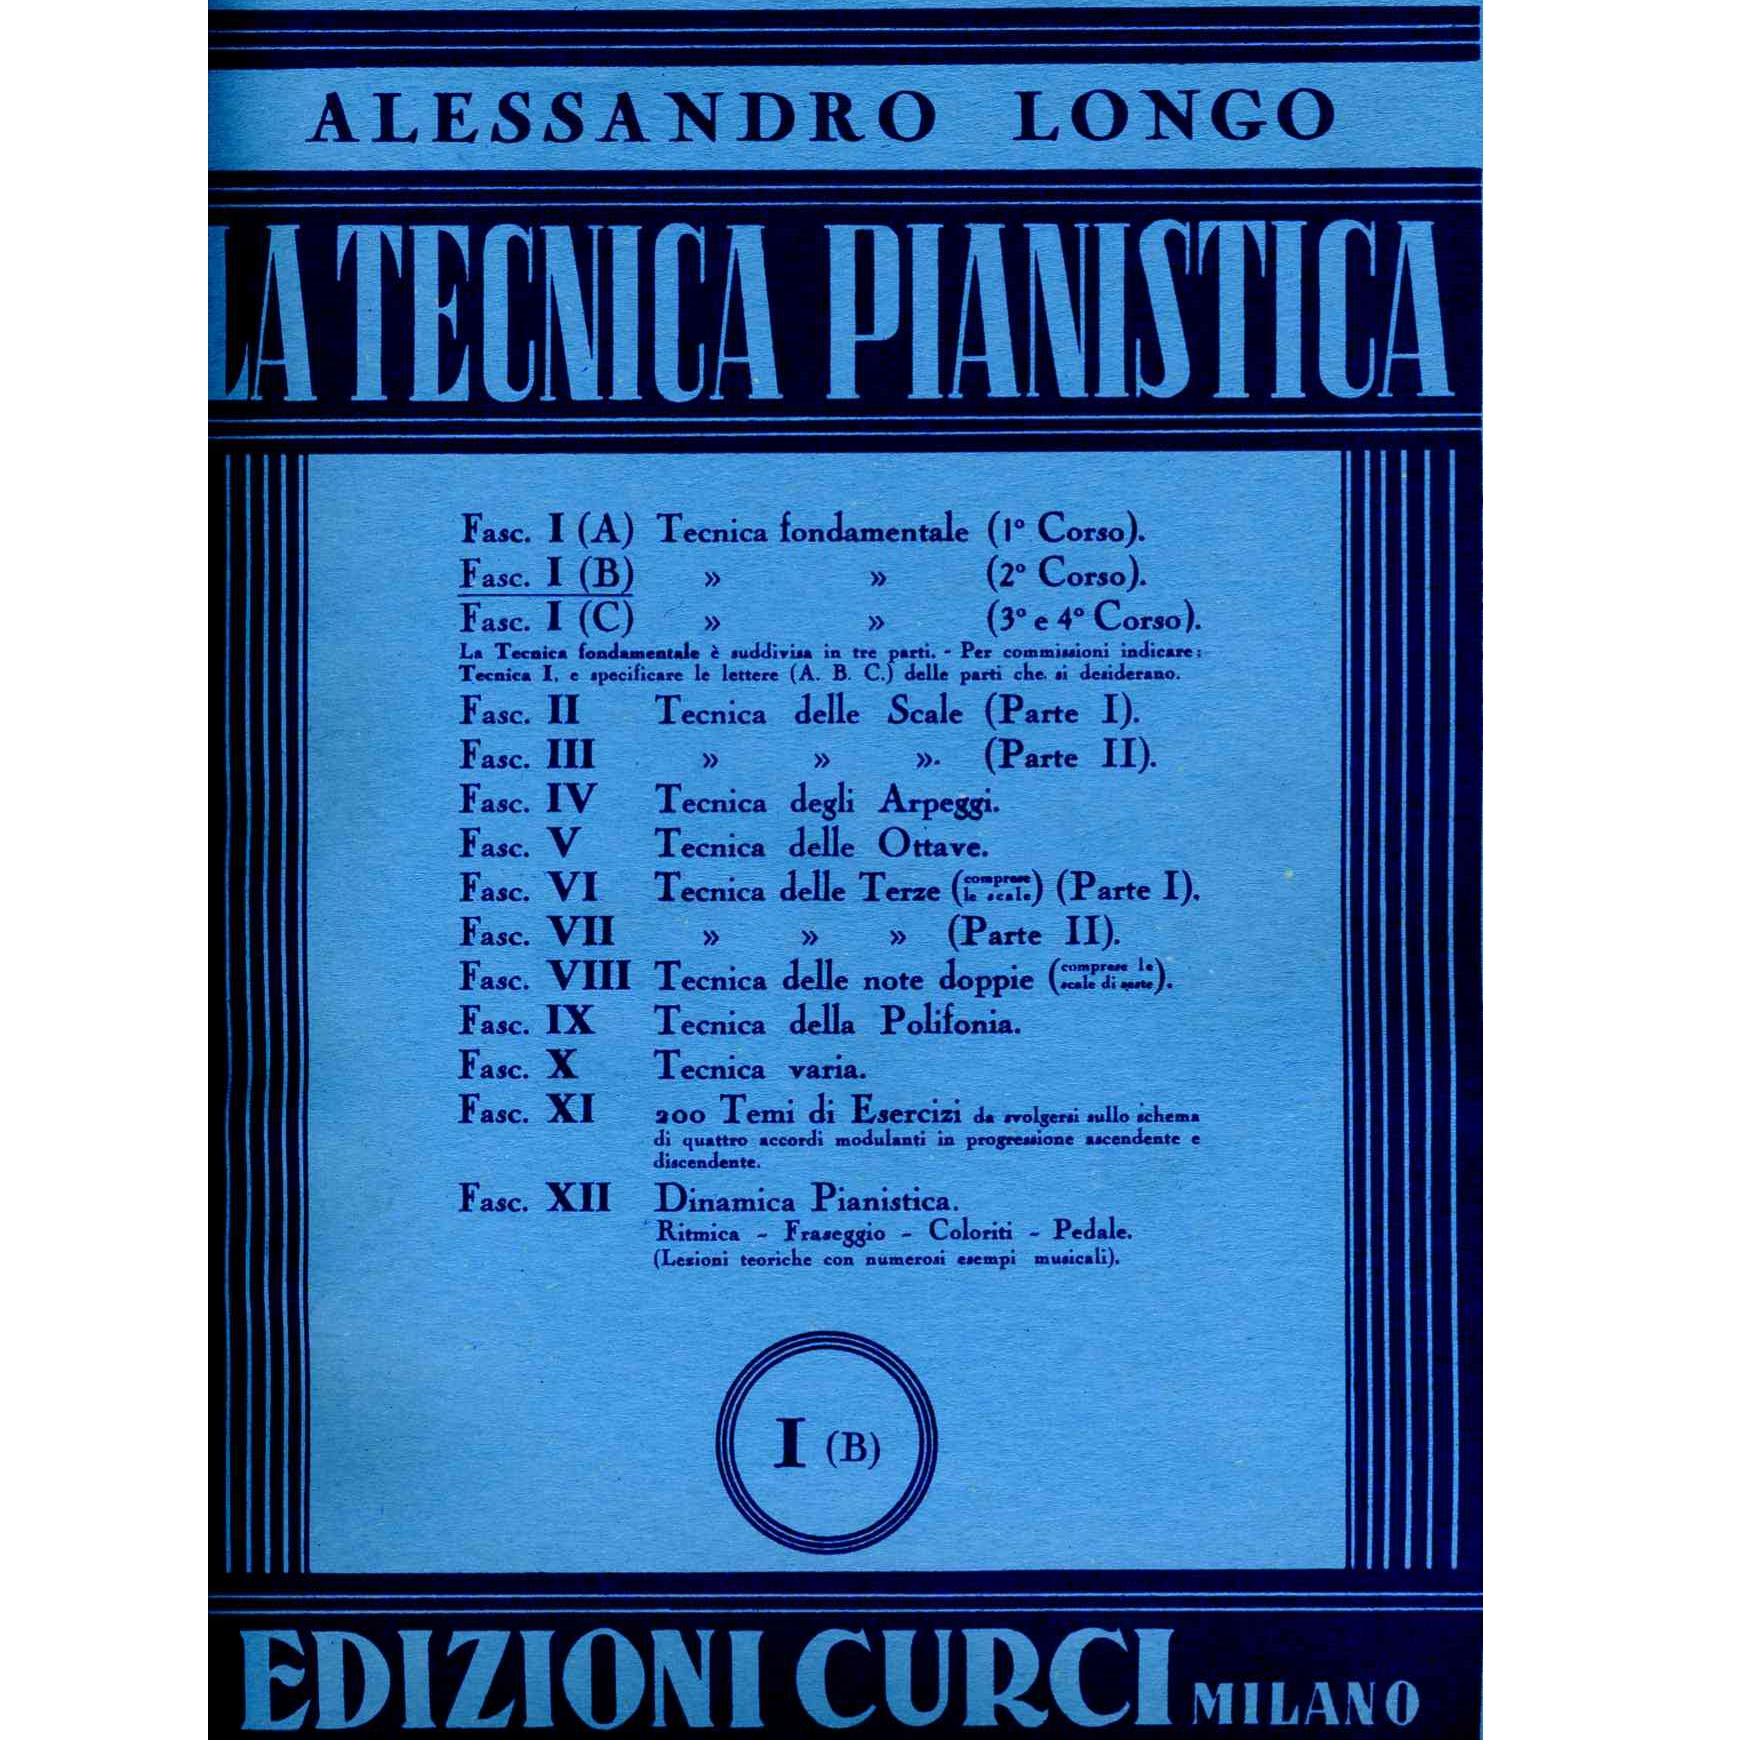 Longo La tecnica pianistica I B - Edizioni Curci Milano